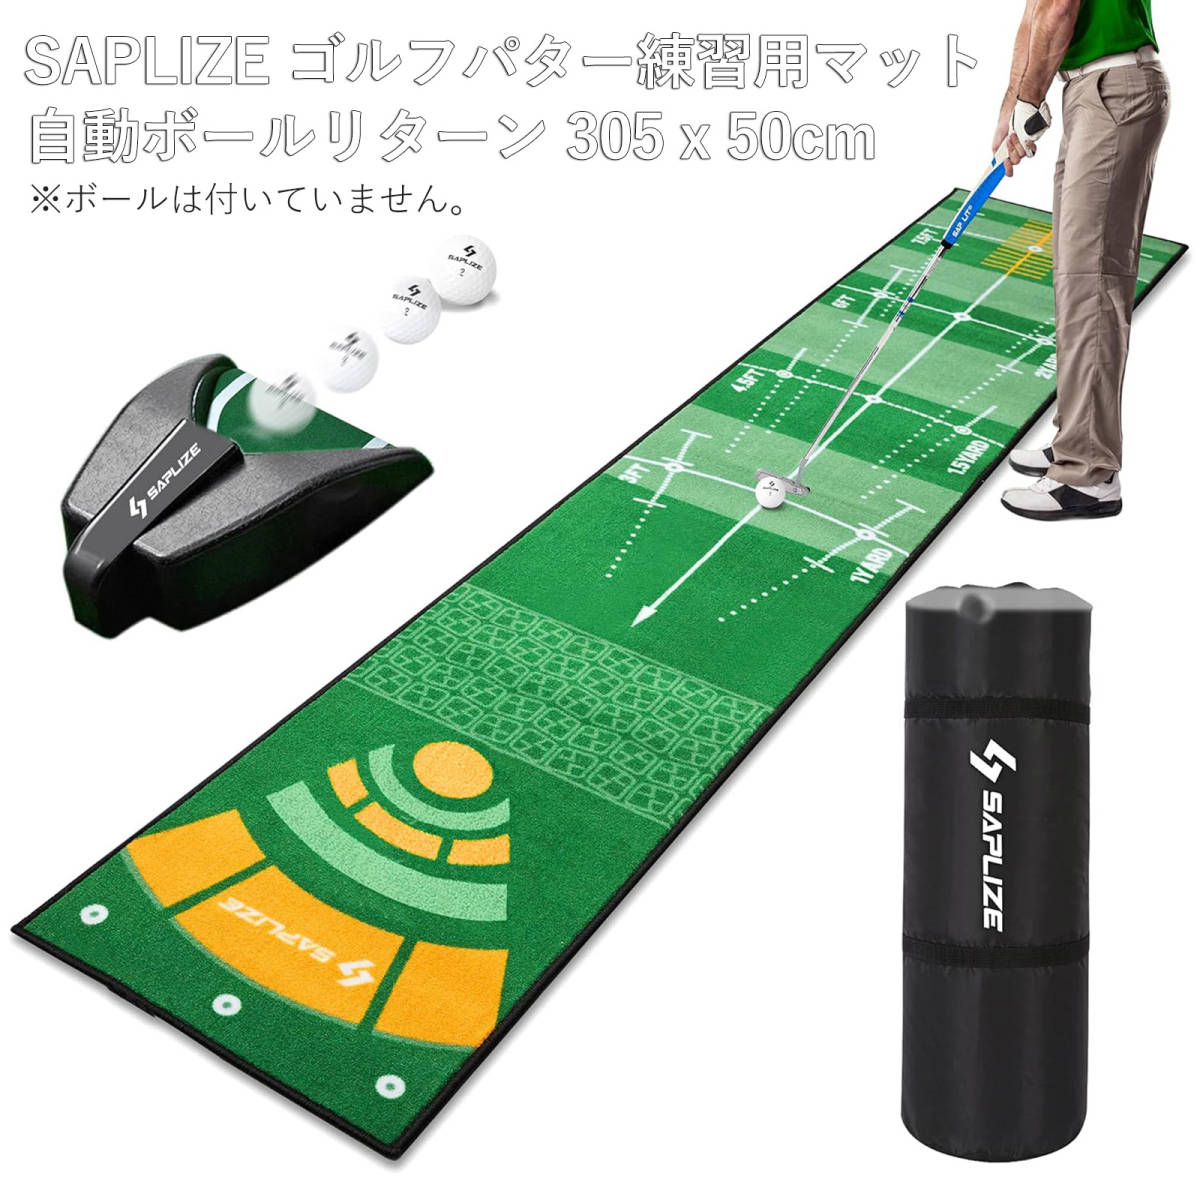 ゴルフ マット Saplize セープライズ ゴルフ パター 練習 マット 自動ボールリターナー付き 滑り止め 50*305cmの画像1